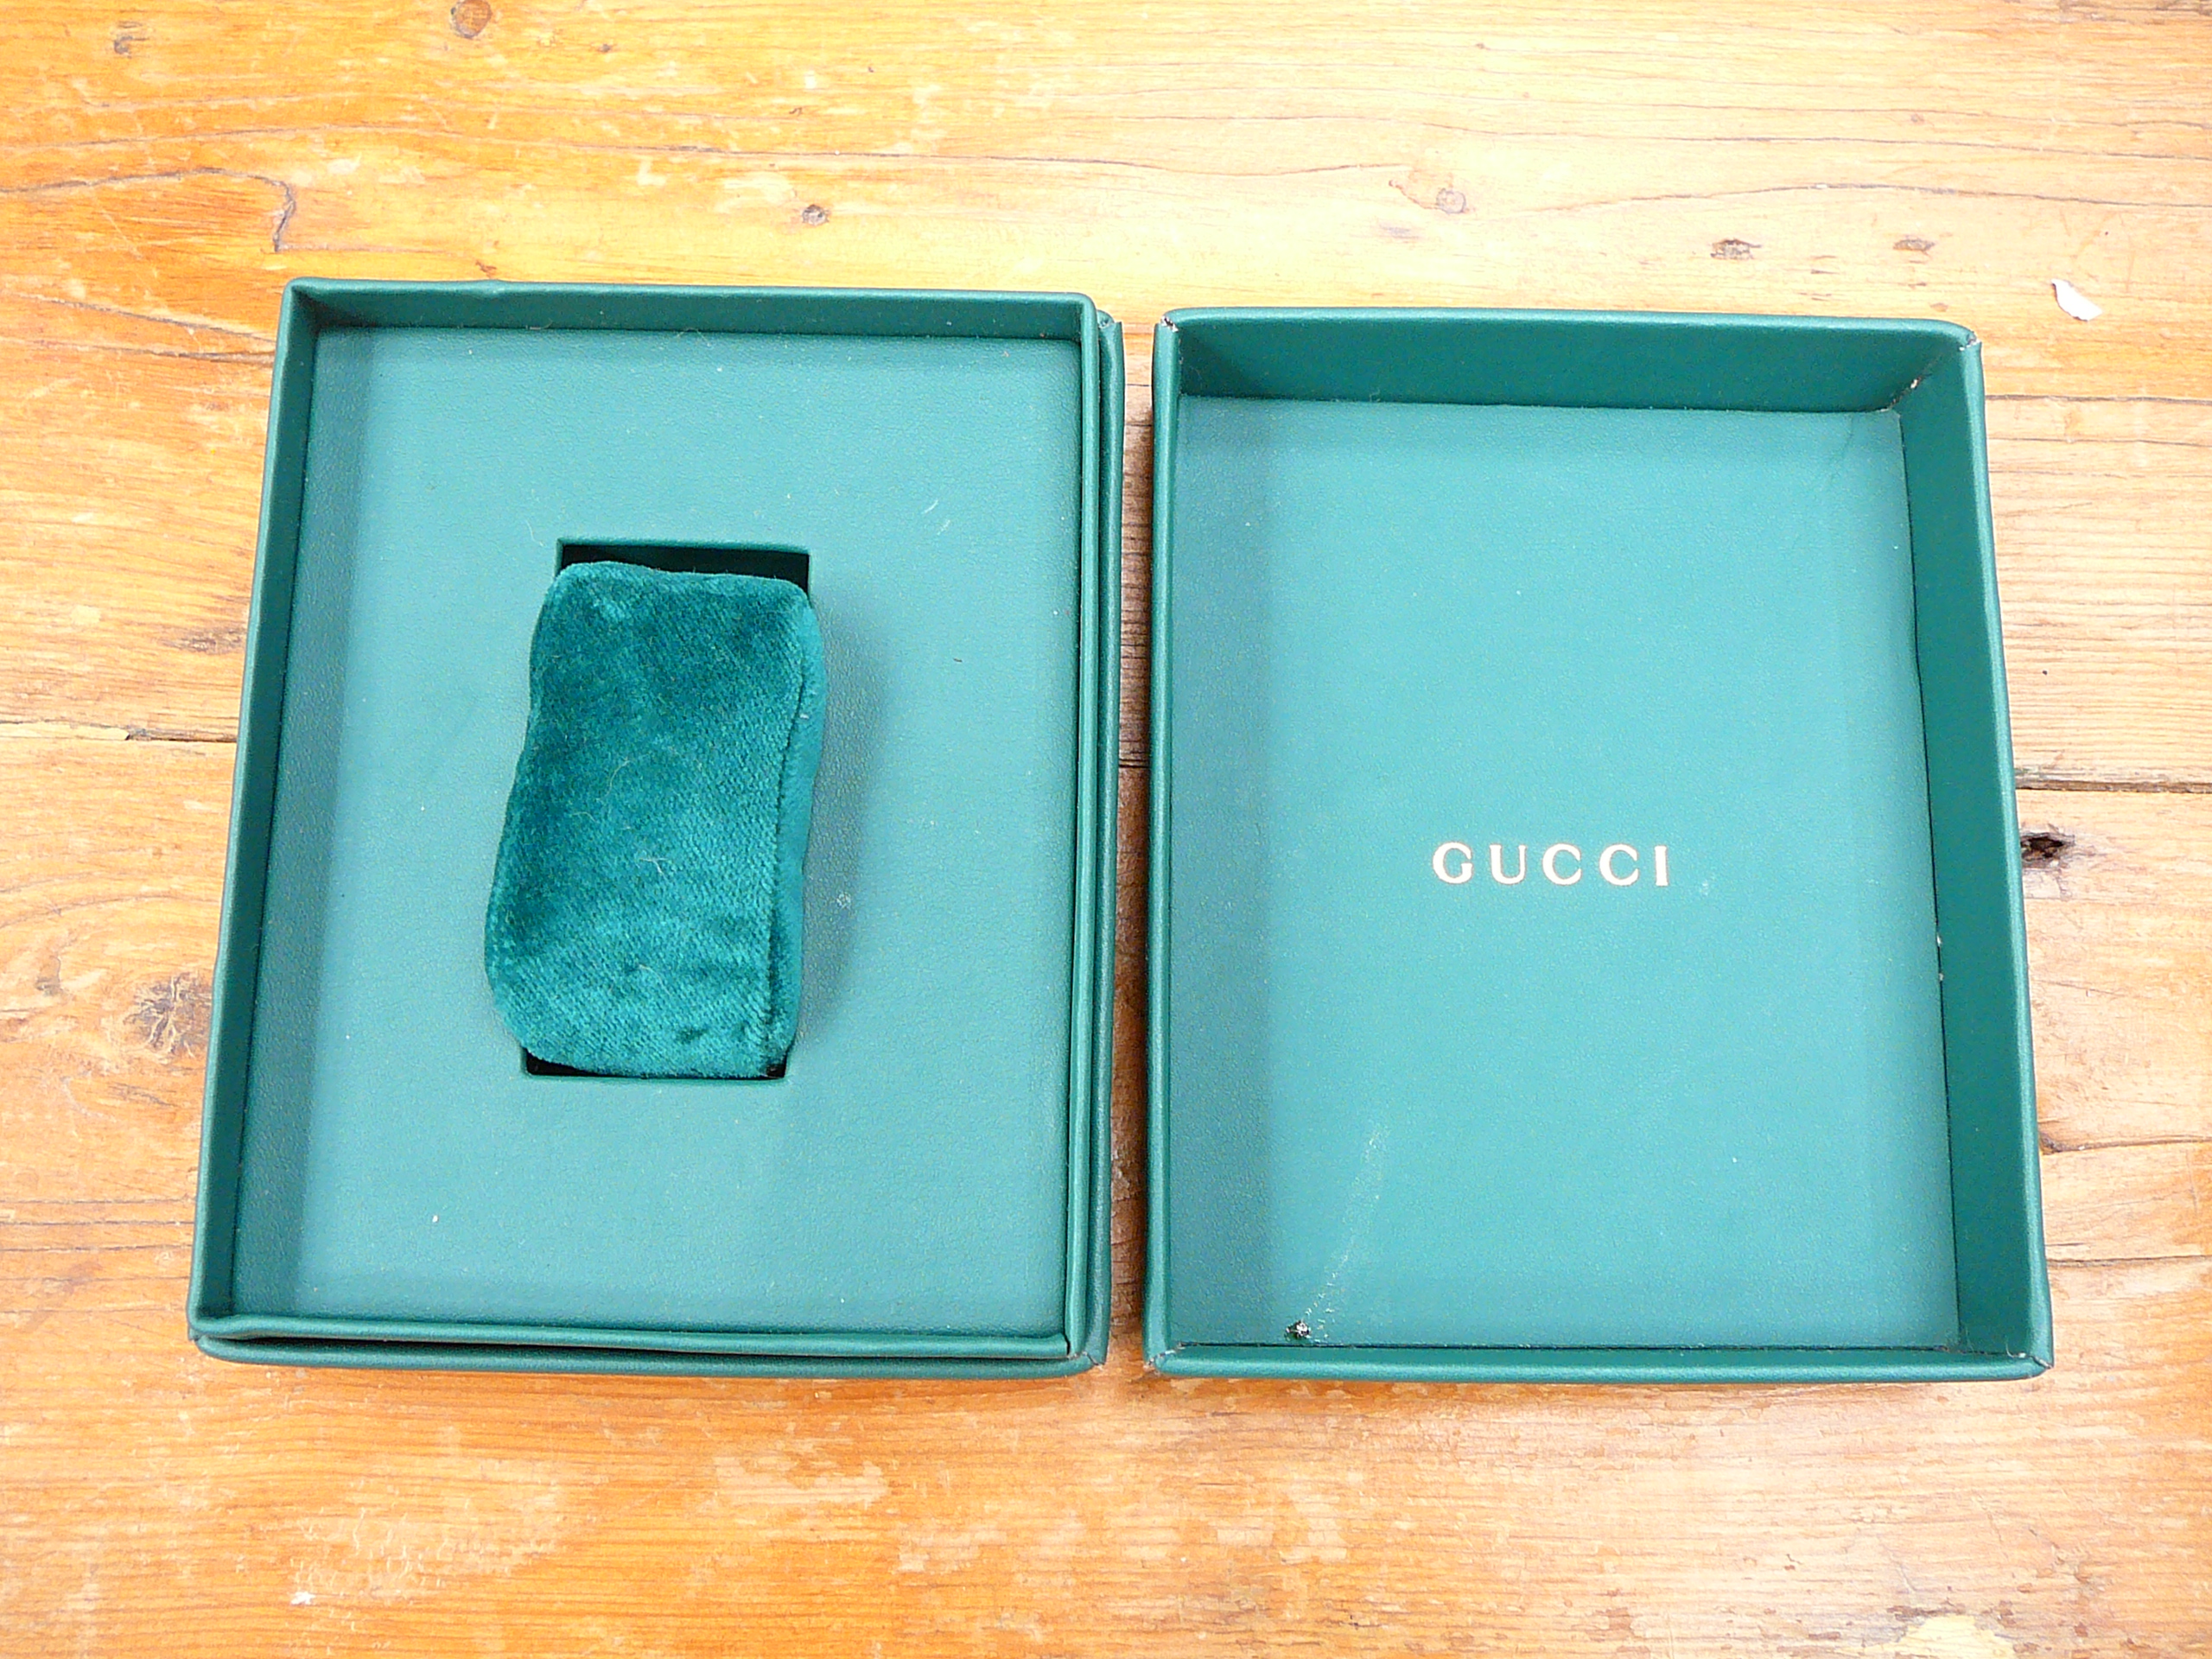 Gucci watch box - Image 2 of 2